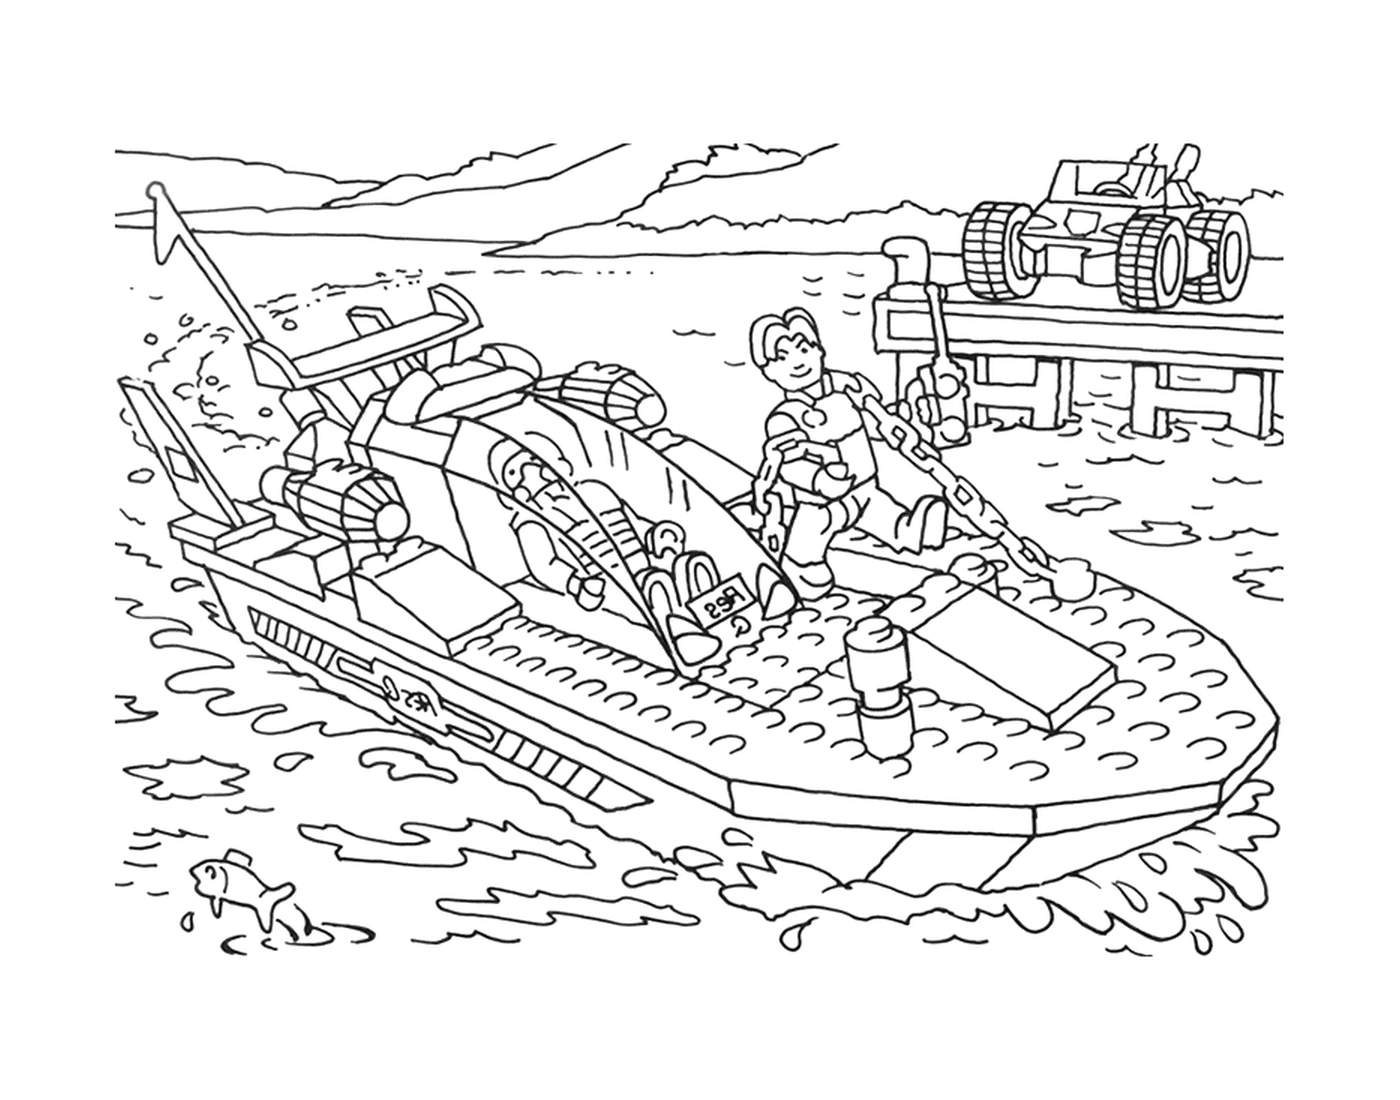  Hombre en un barco Lego 